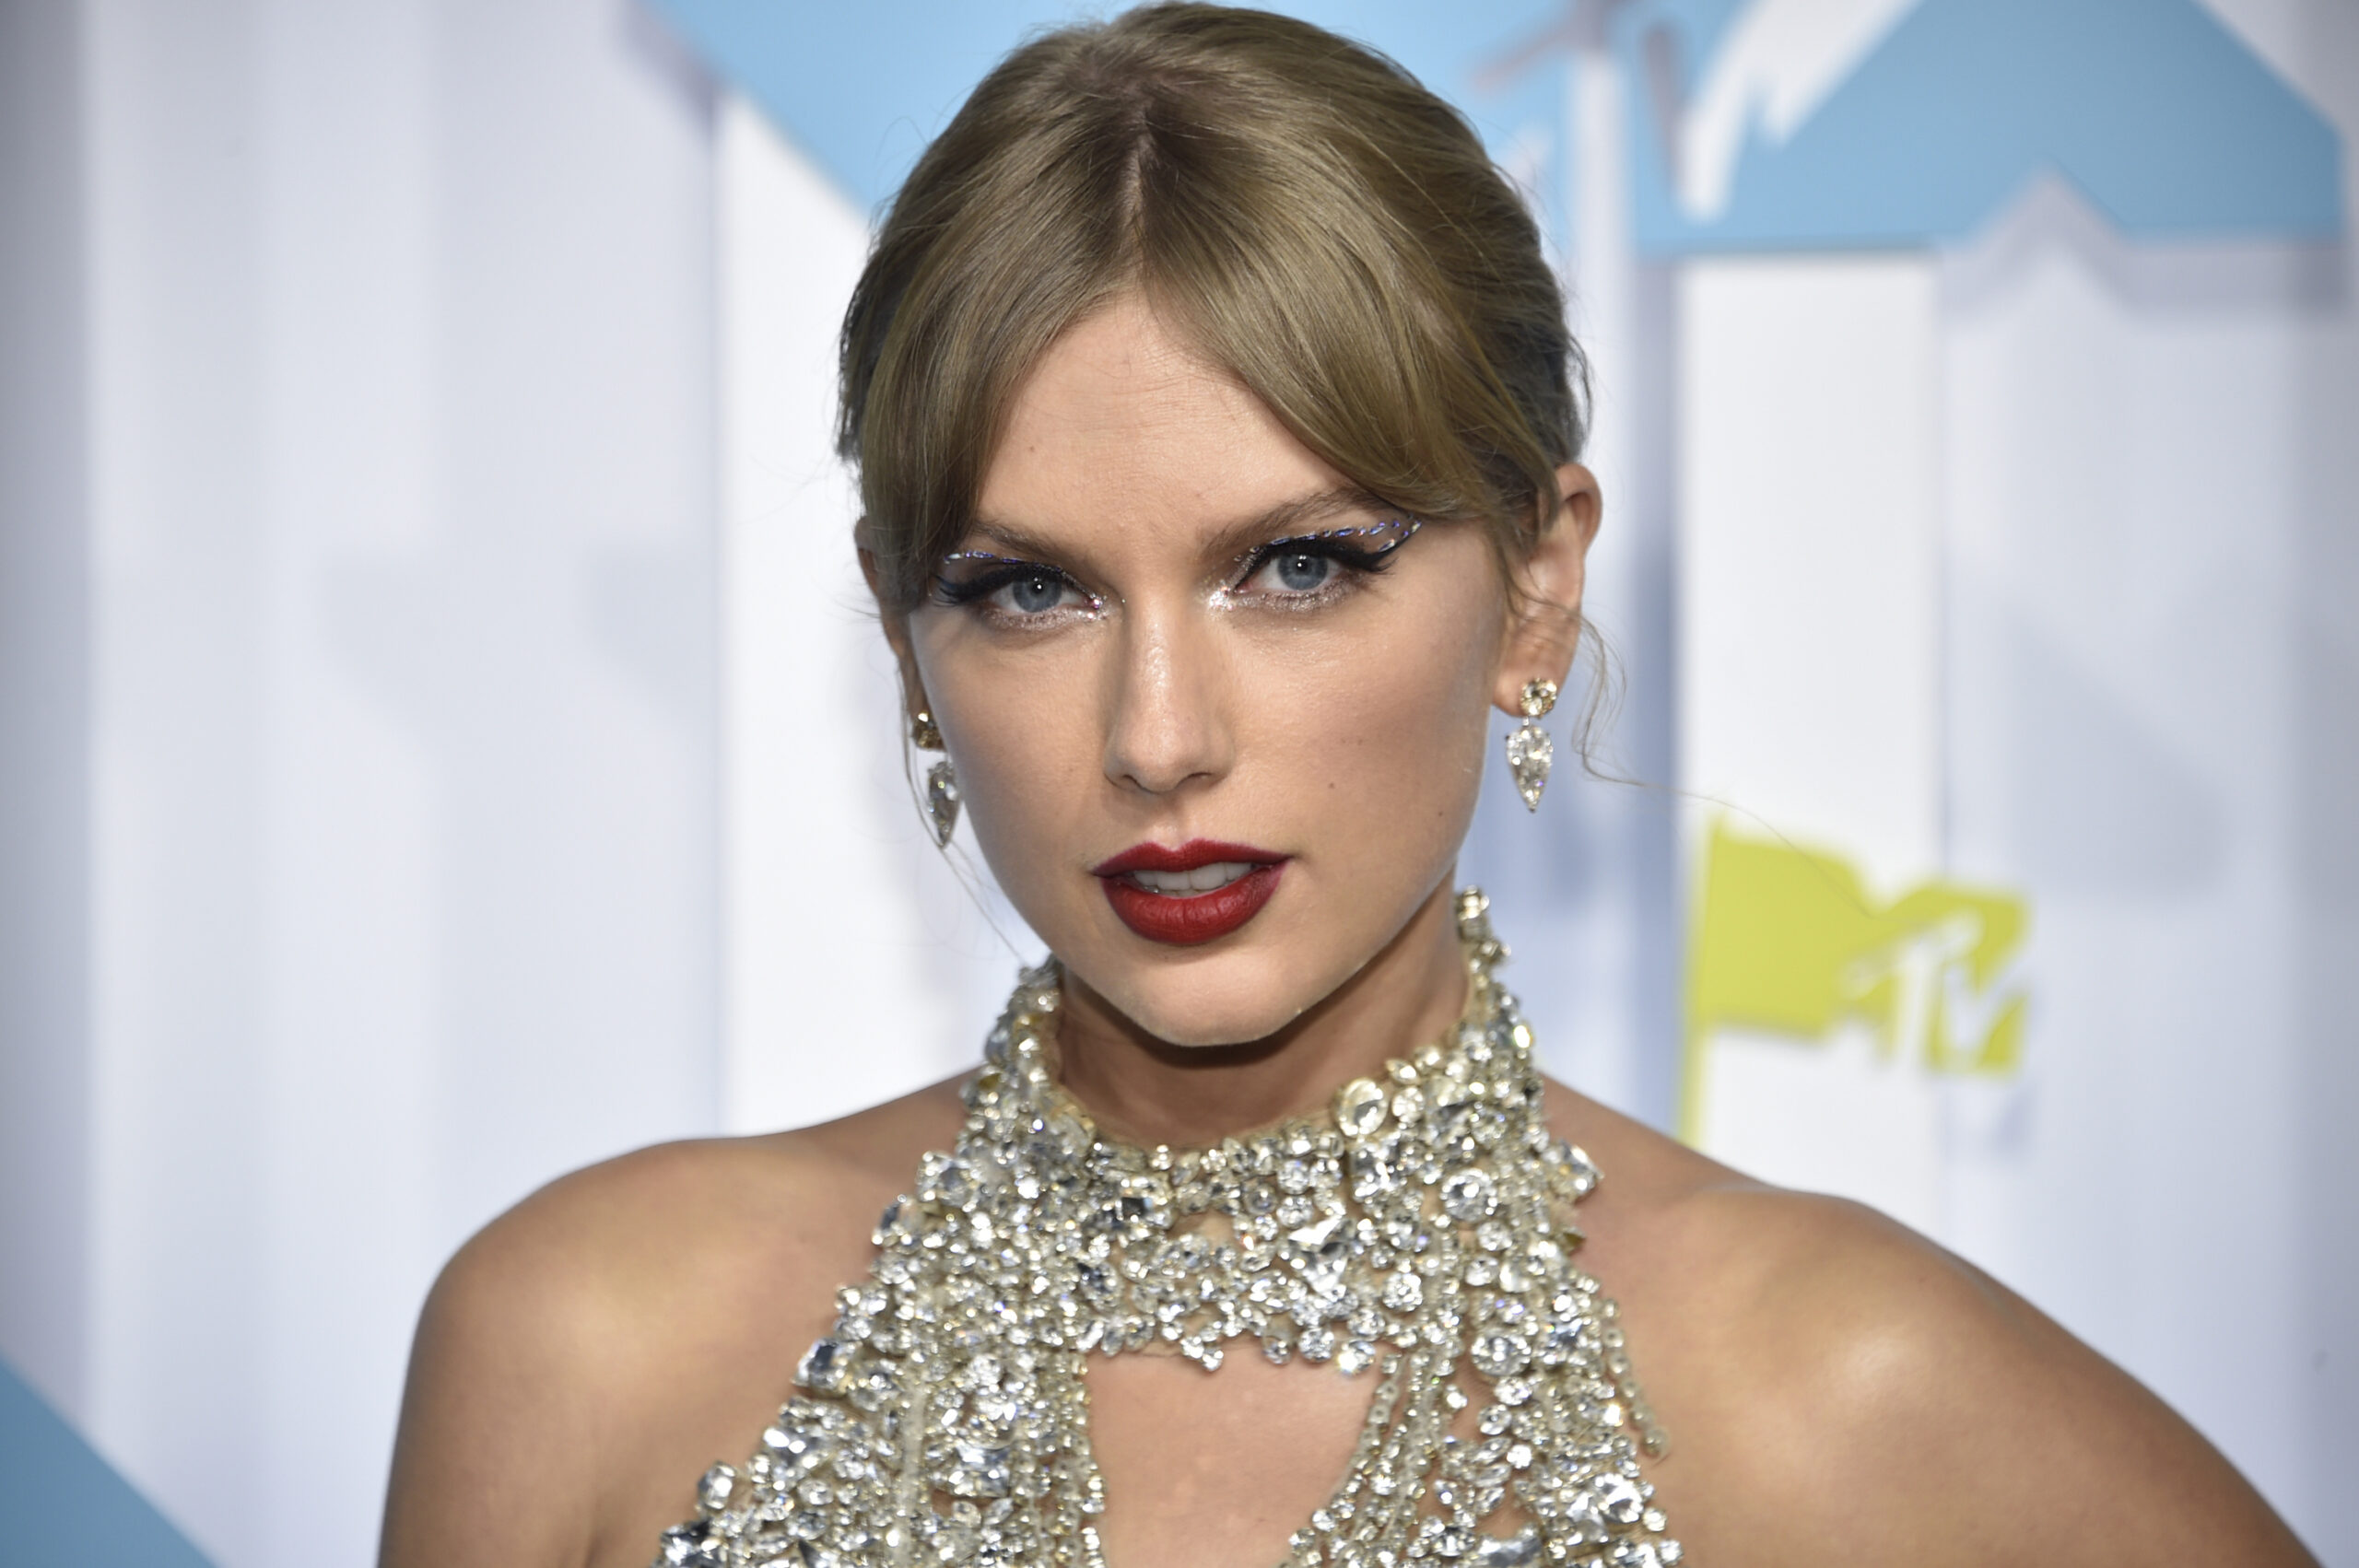 Für Taylor Swift ist ihr neues ALbum wie ein wilder Ritt.